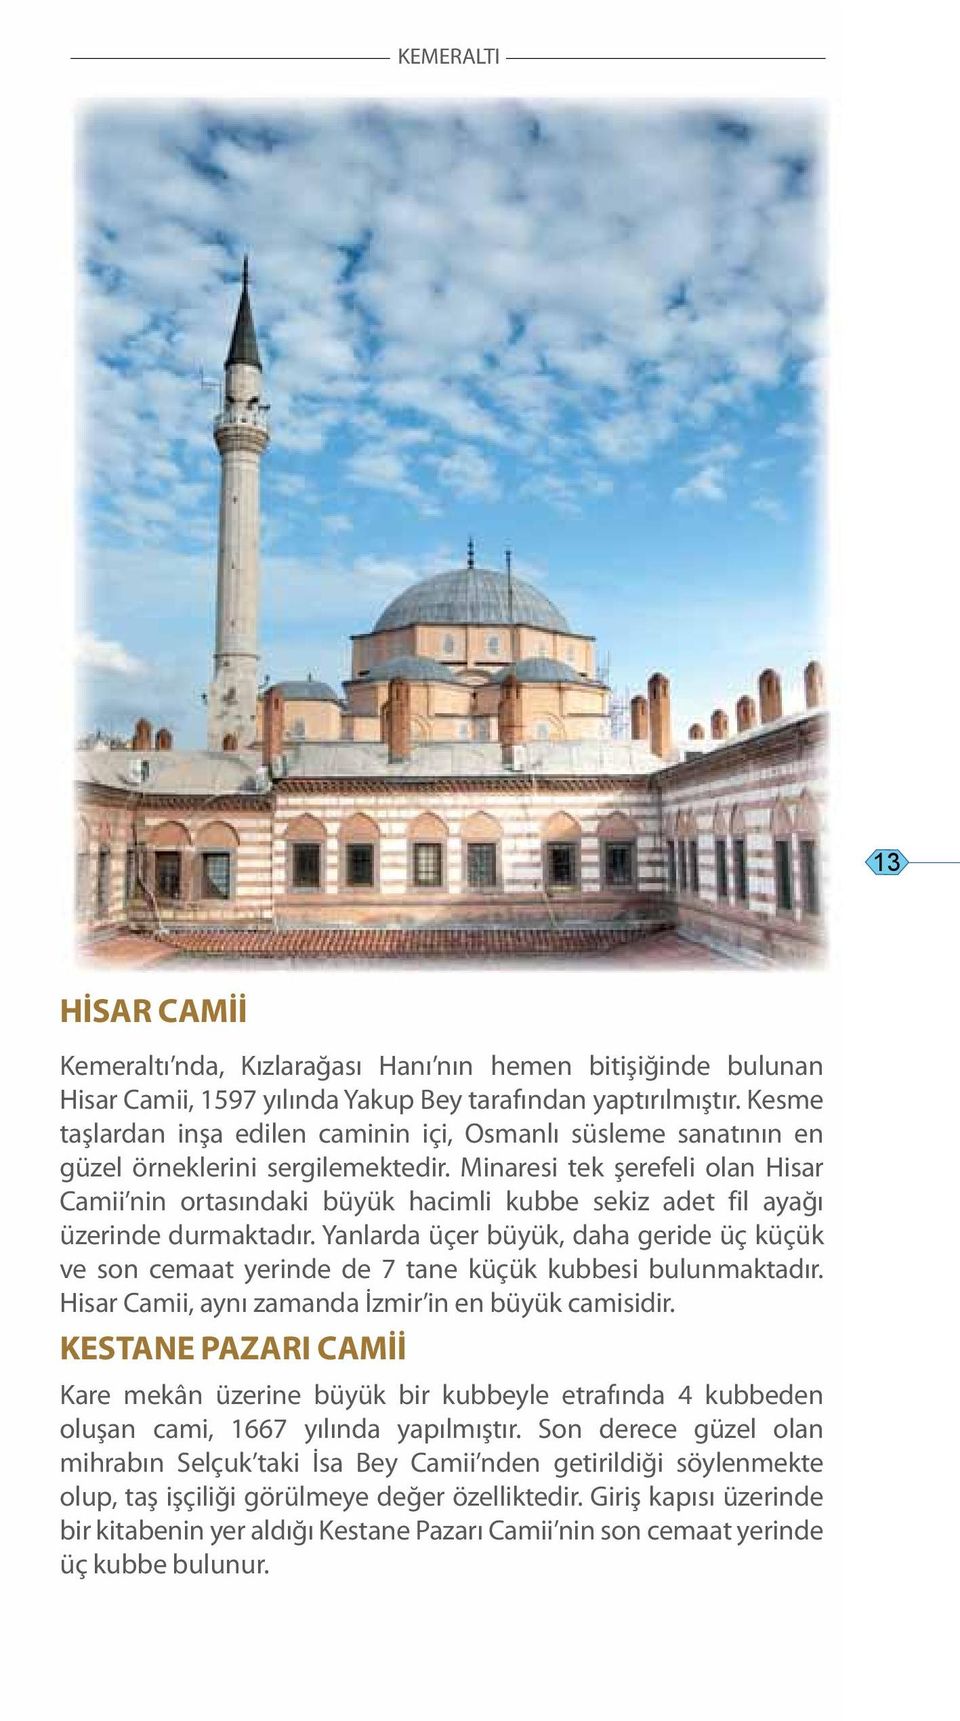 Minaresi tek şerefeli olan Hisar Camii nin ortasındaki büyük hacimli kubbe sekiz adet fil ayağı üzerinde durmaktadır.